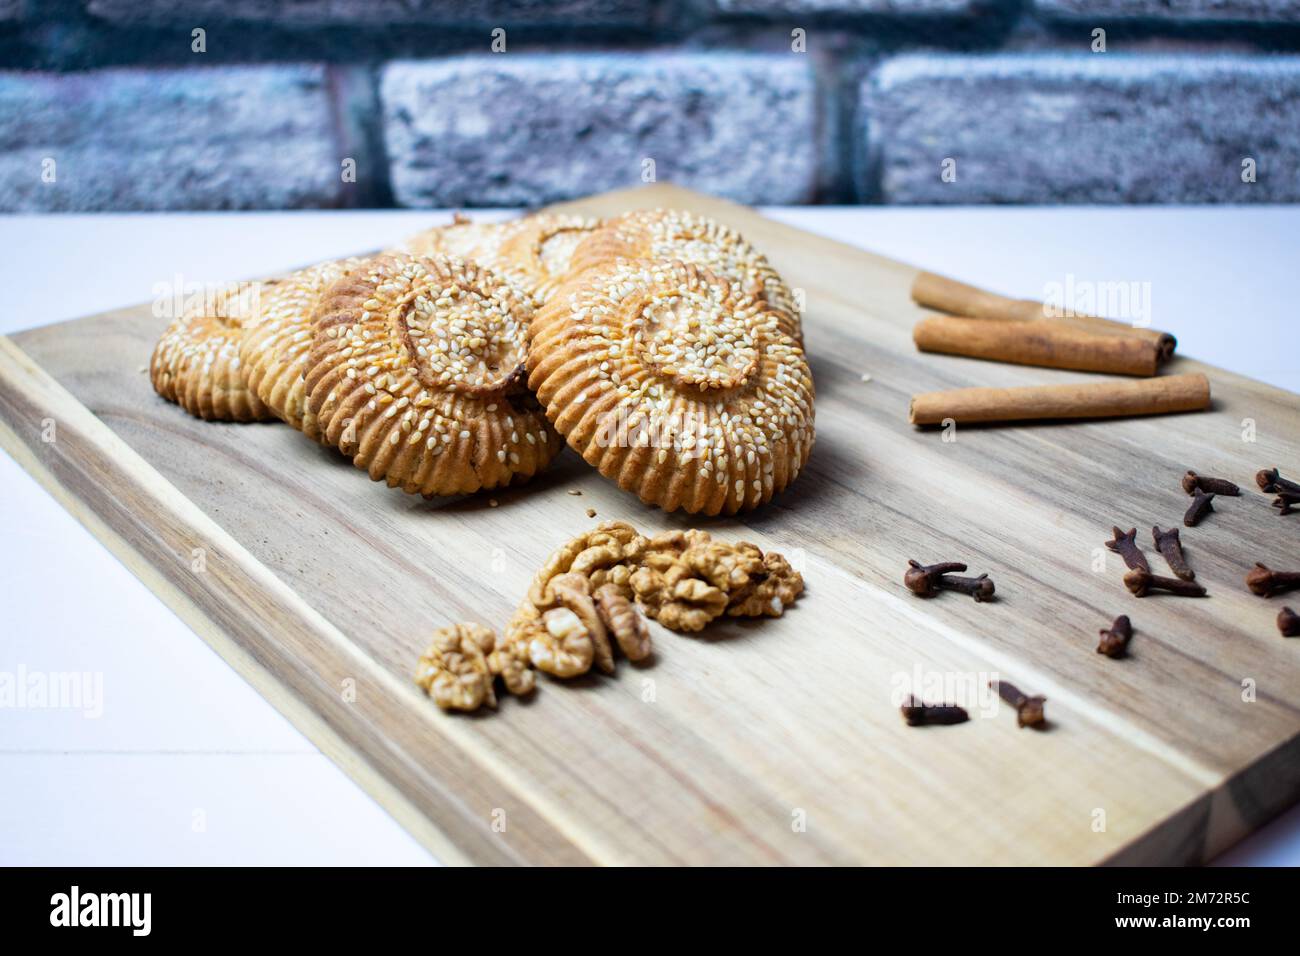 Les biscuits traditionnels turcs, les biscuits fourrés de sésame et de noix, le nom "kombe", les aliments traditionnels locaux d'Antakya. Banque D'Images